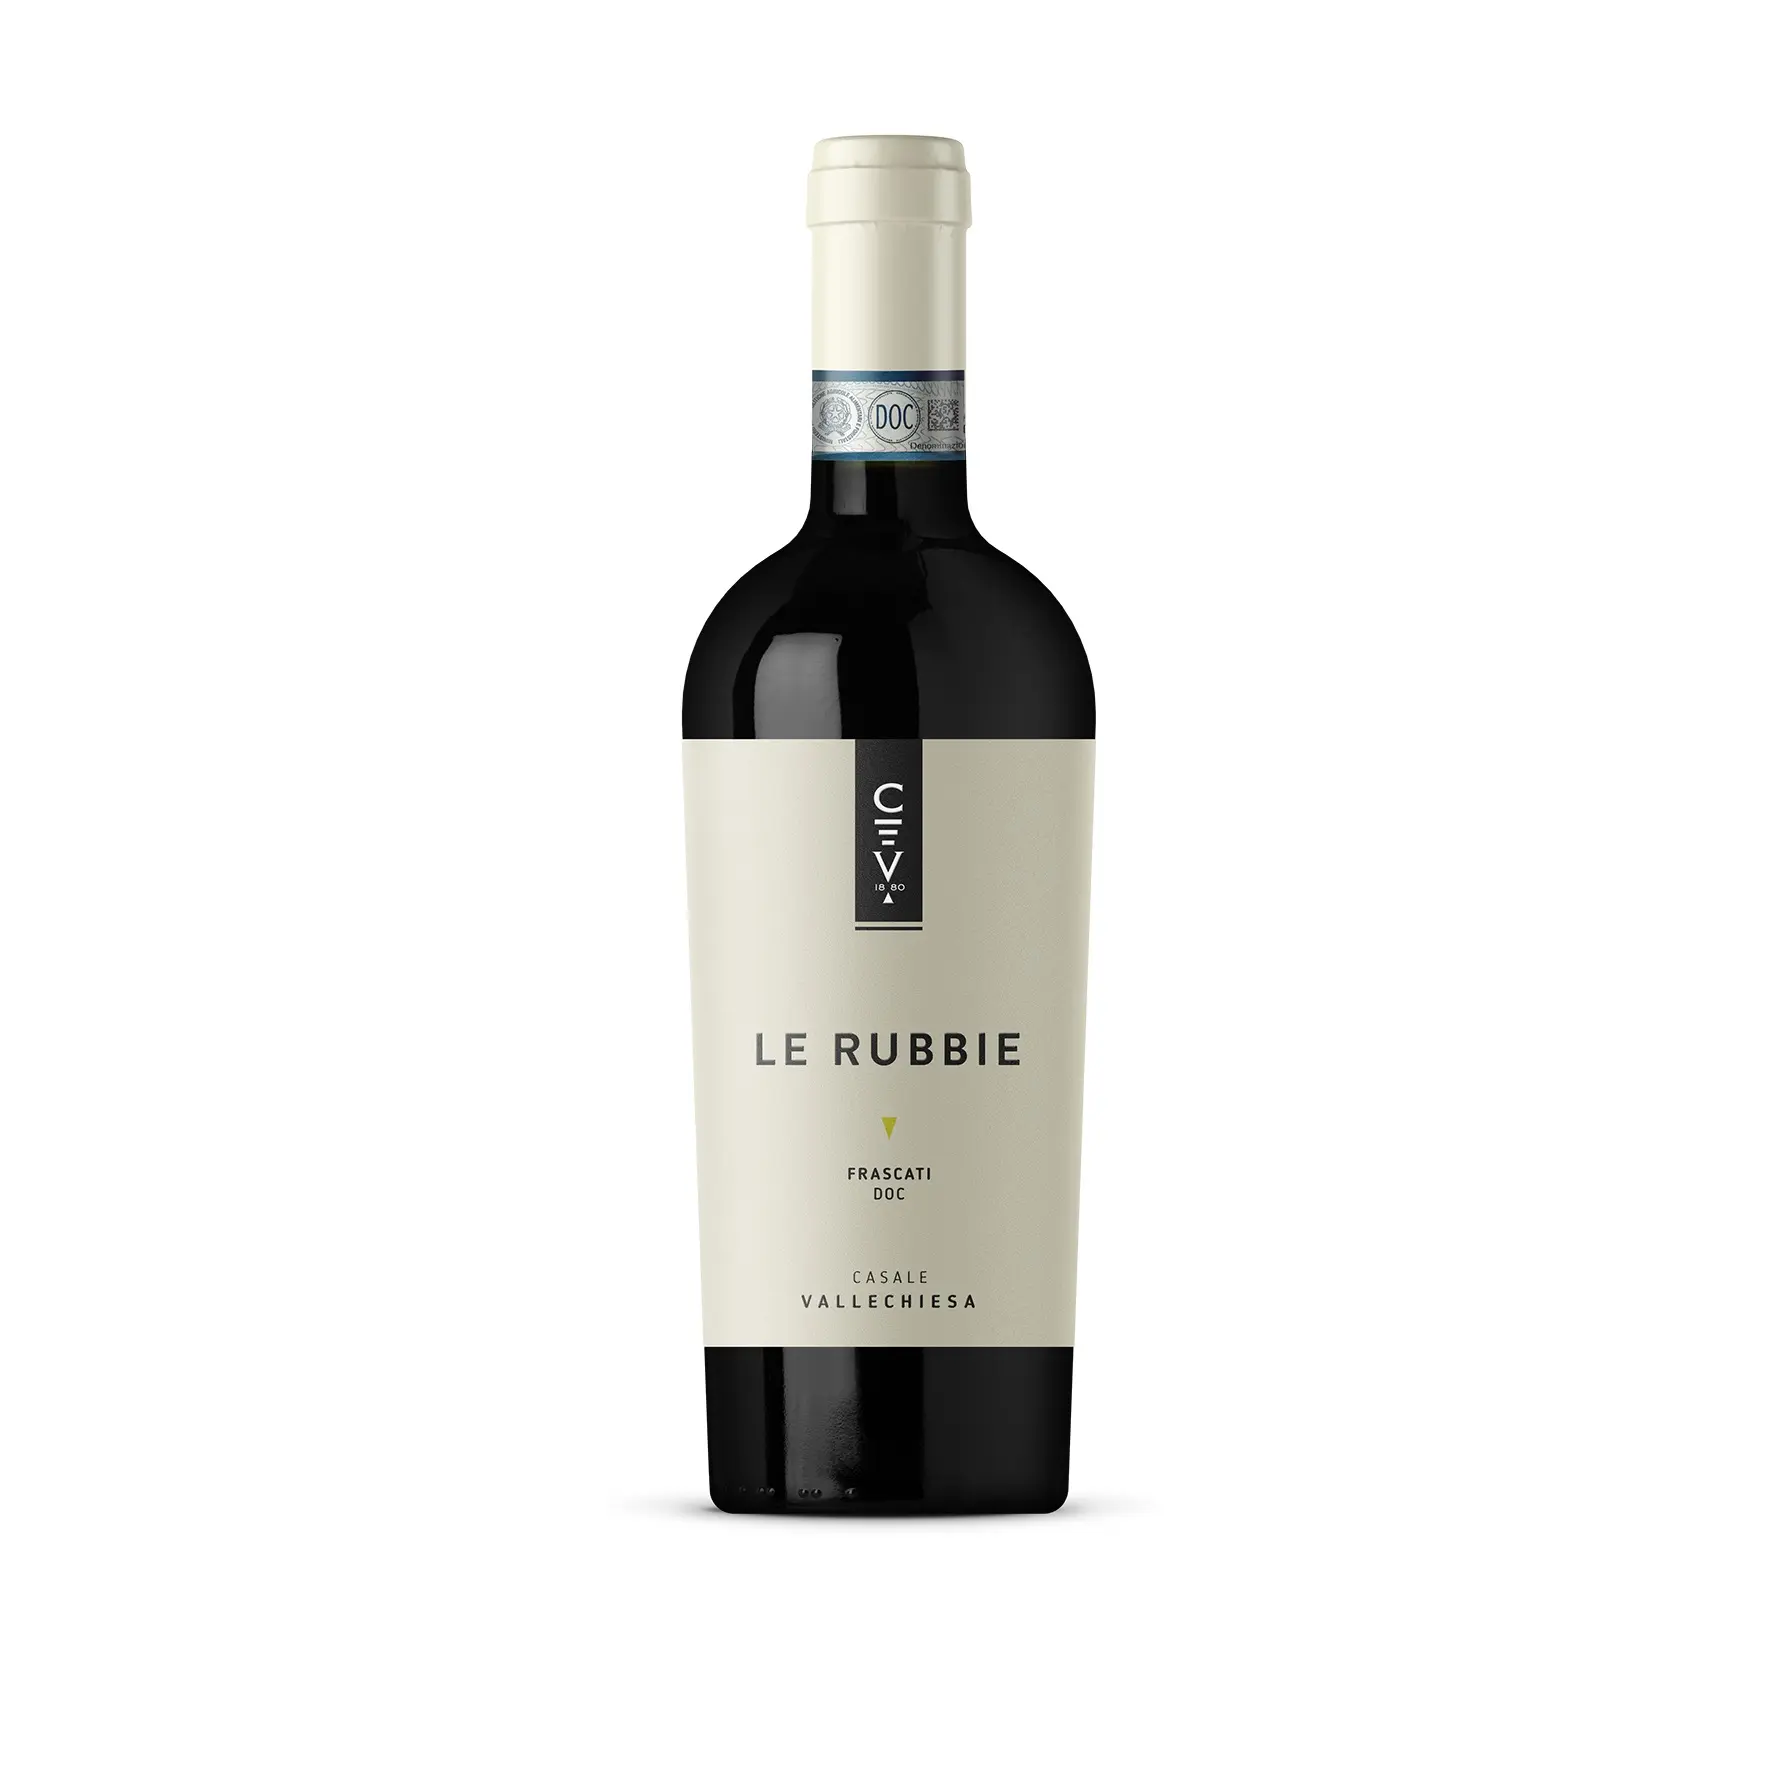 Italiana di alta qualità di Vino Bianco Secco-Made in Italia di Vino Bianco-0.750 ml Bottiglia di Vetro-LE RUBBIE Italiana FRASCATI D.O.C.